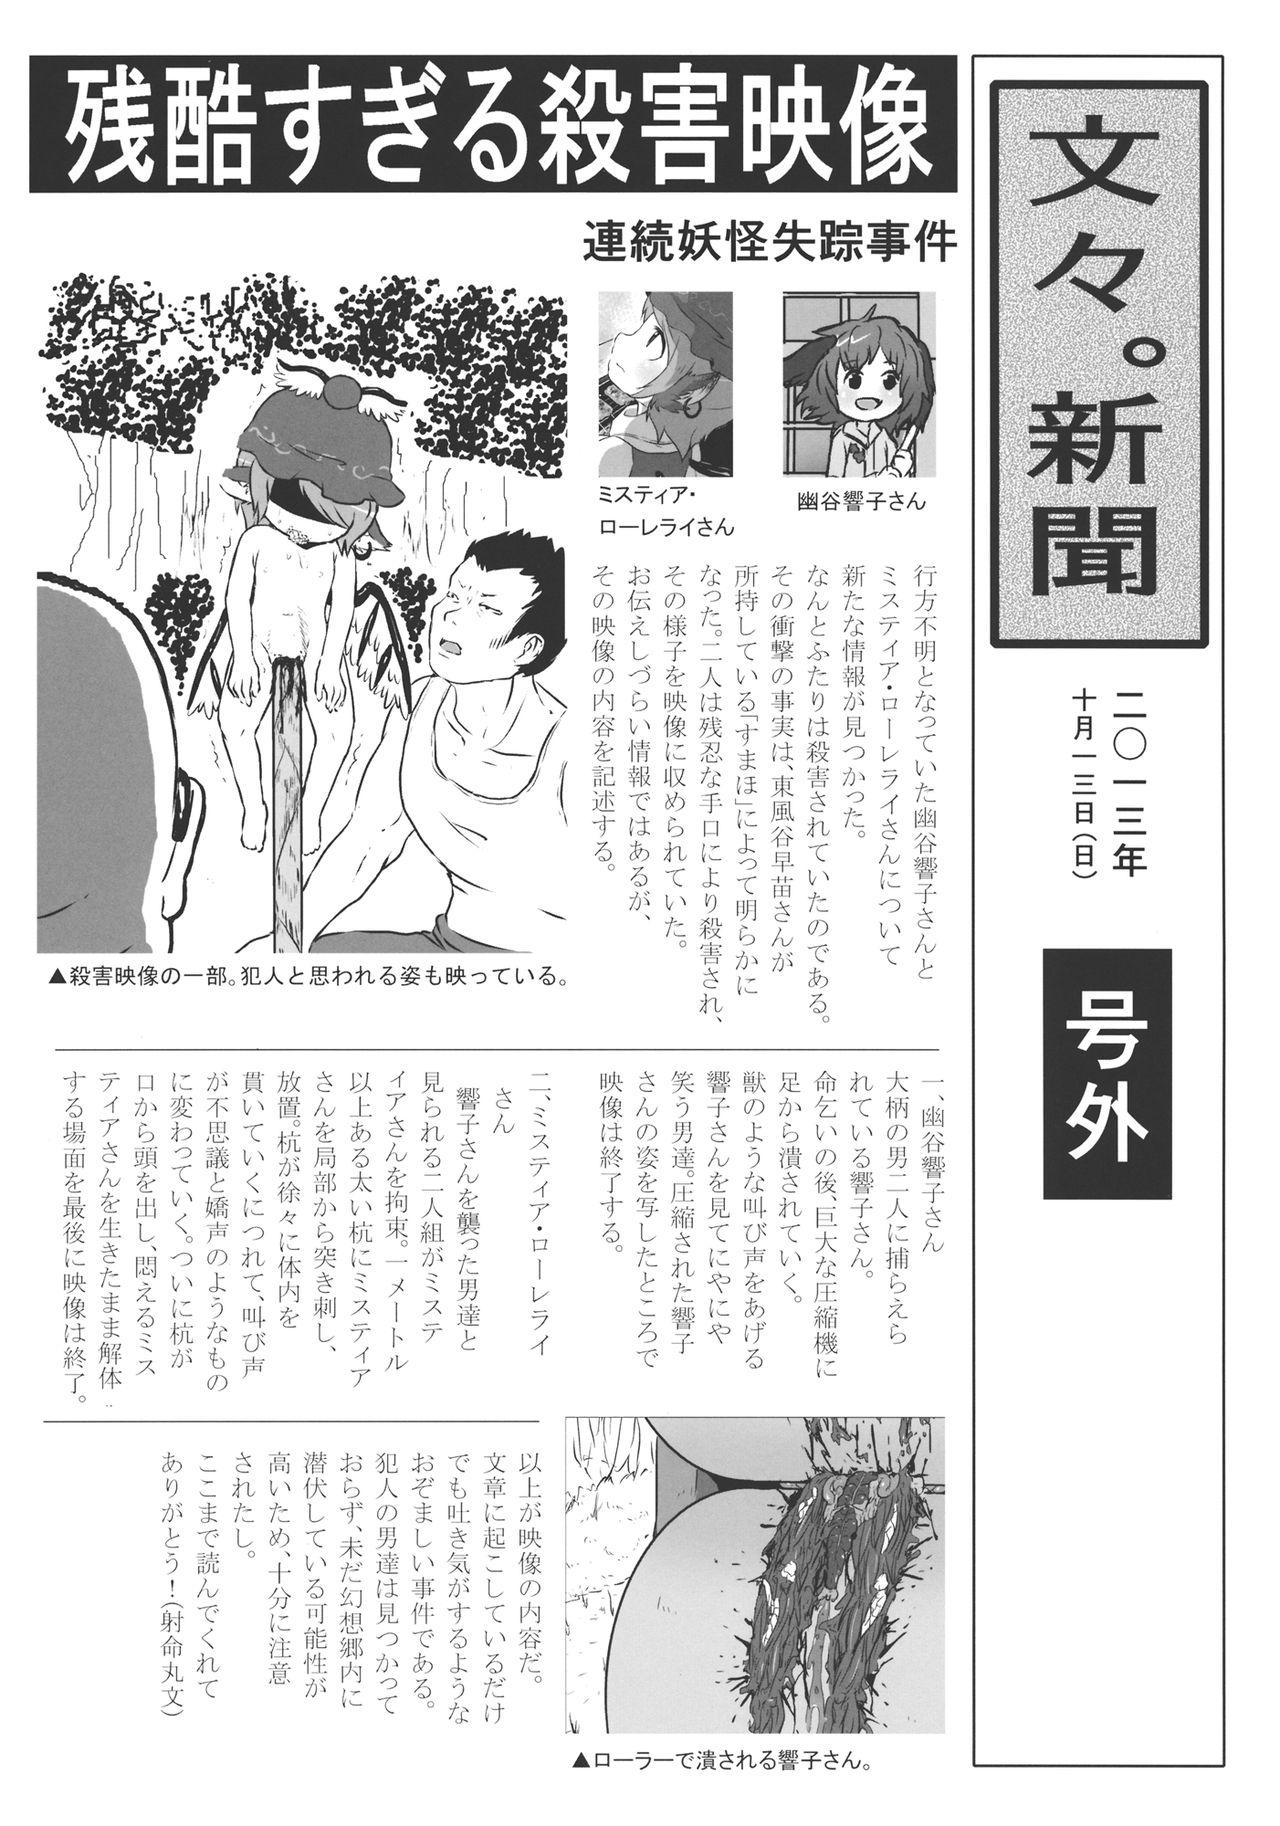 Hot (Kouroumu 9) [02 (Harasaki)] (Kojin Satsuei)(Touhou)(Kouroumu 9)[02] Touhou snuff vol.3 Kawashiro Nitori (Mushuusei) (Loli-kei Youjo no Kirei na Hadaka wo Suki Houdai shichai mashita!).avi (Touhou Project) [布洛基个人汉化] - Touhou project Chupada - Page 4